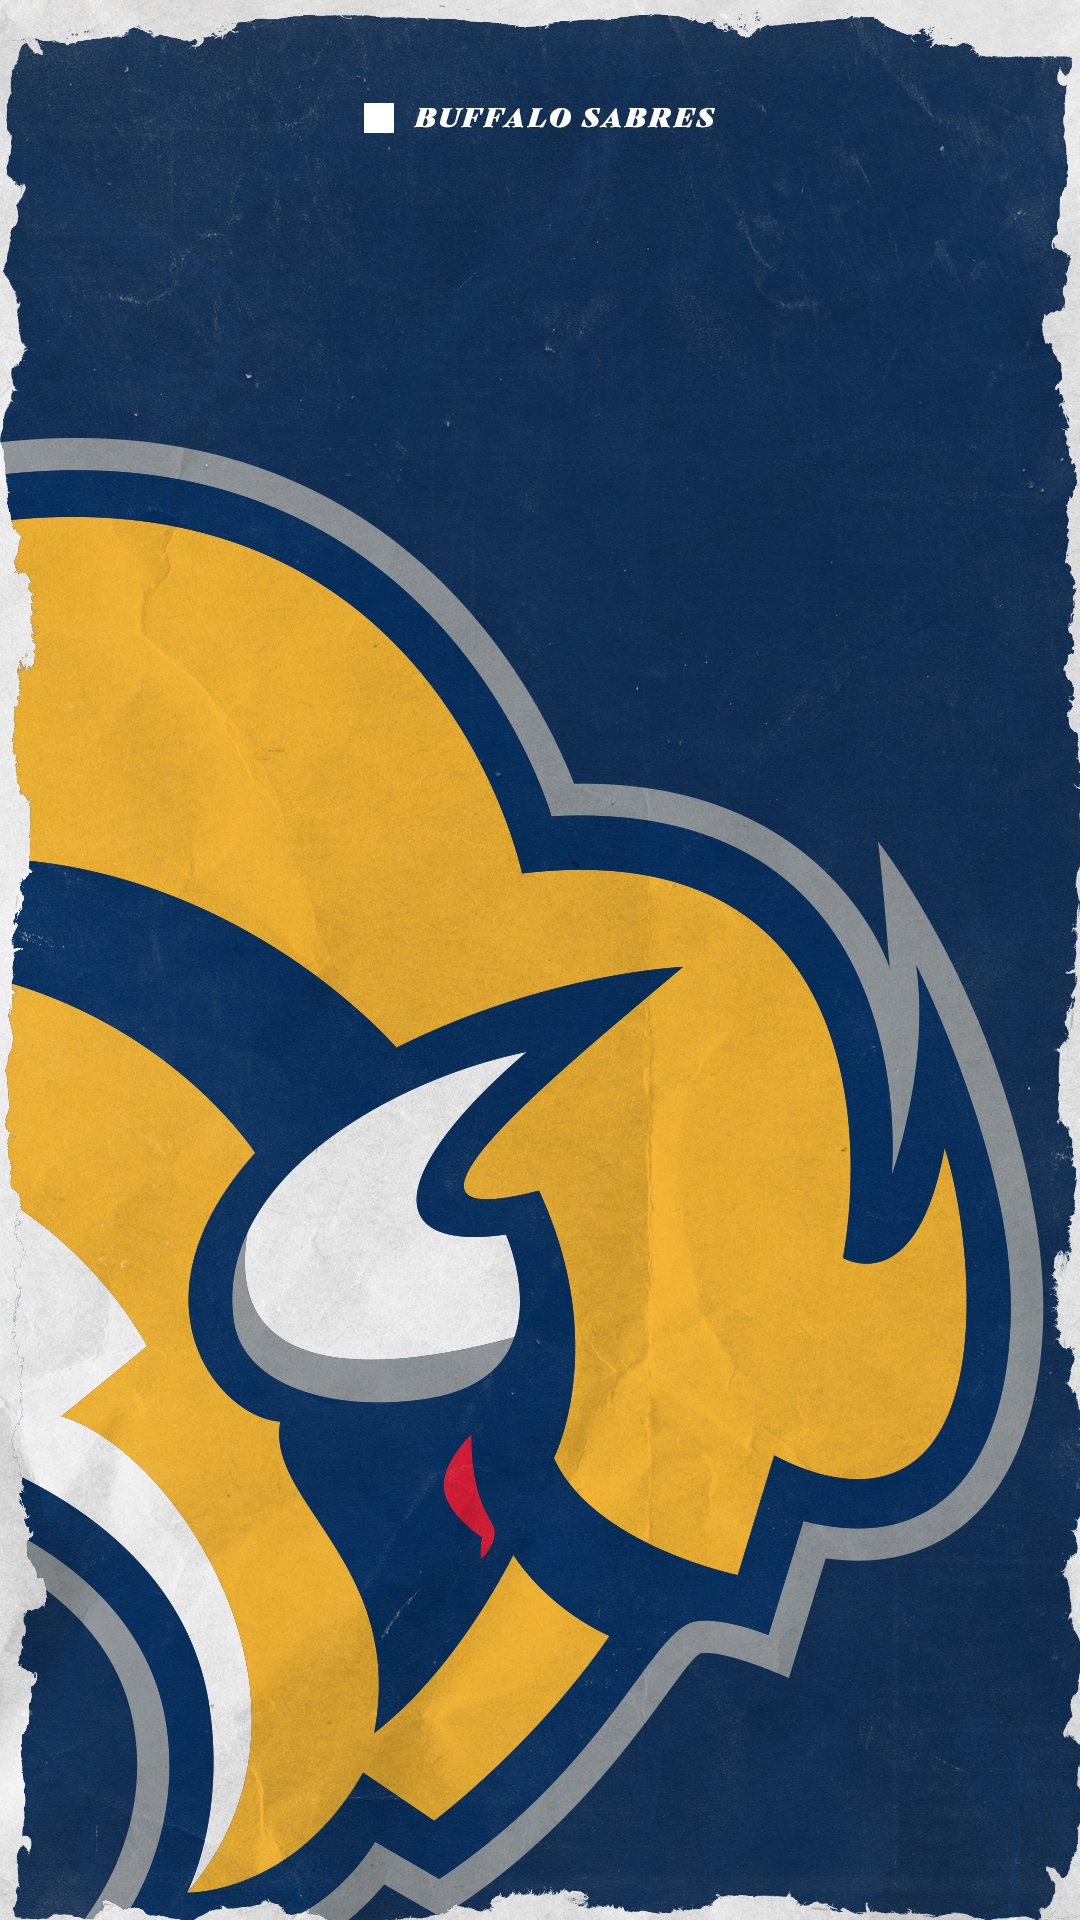 Buffalo Sabres 50th Anniversary Concepts (Credit: @BuffaloWallpapers) : r/ sabres